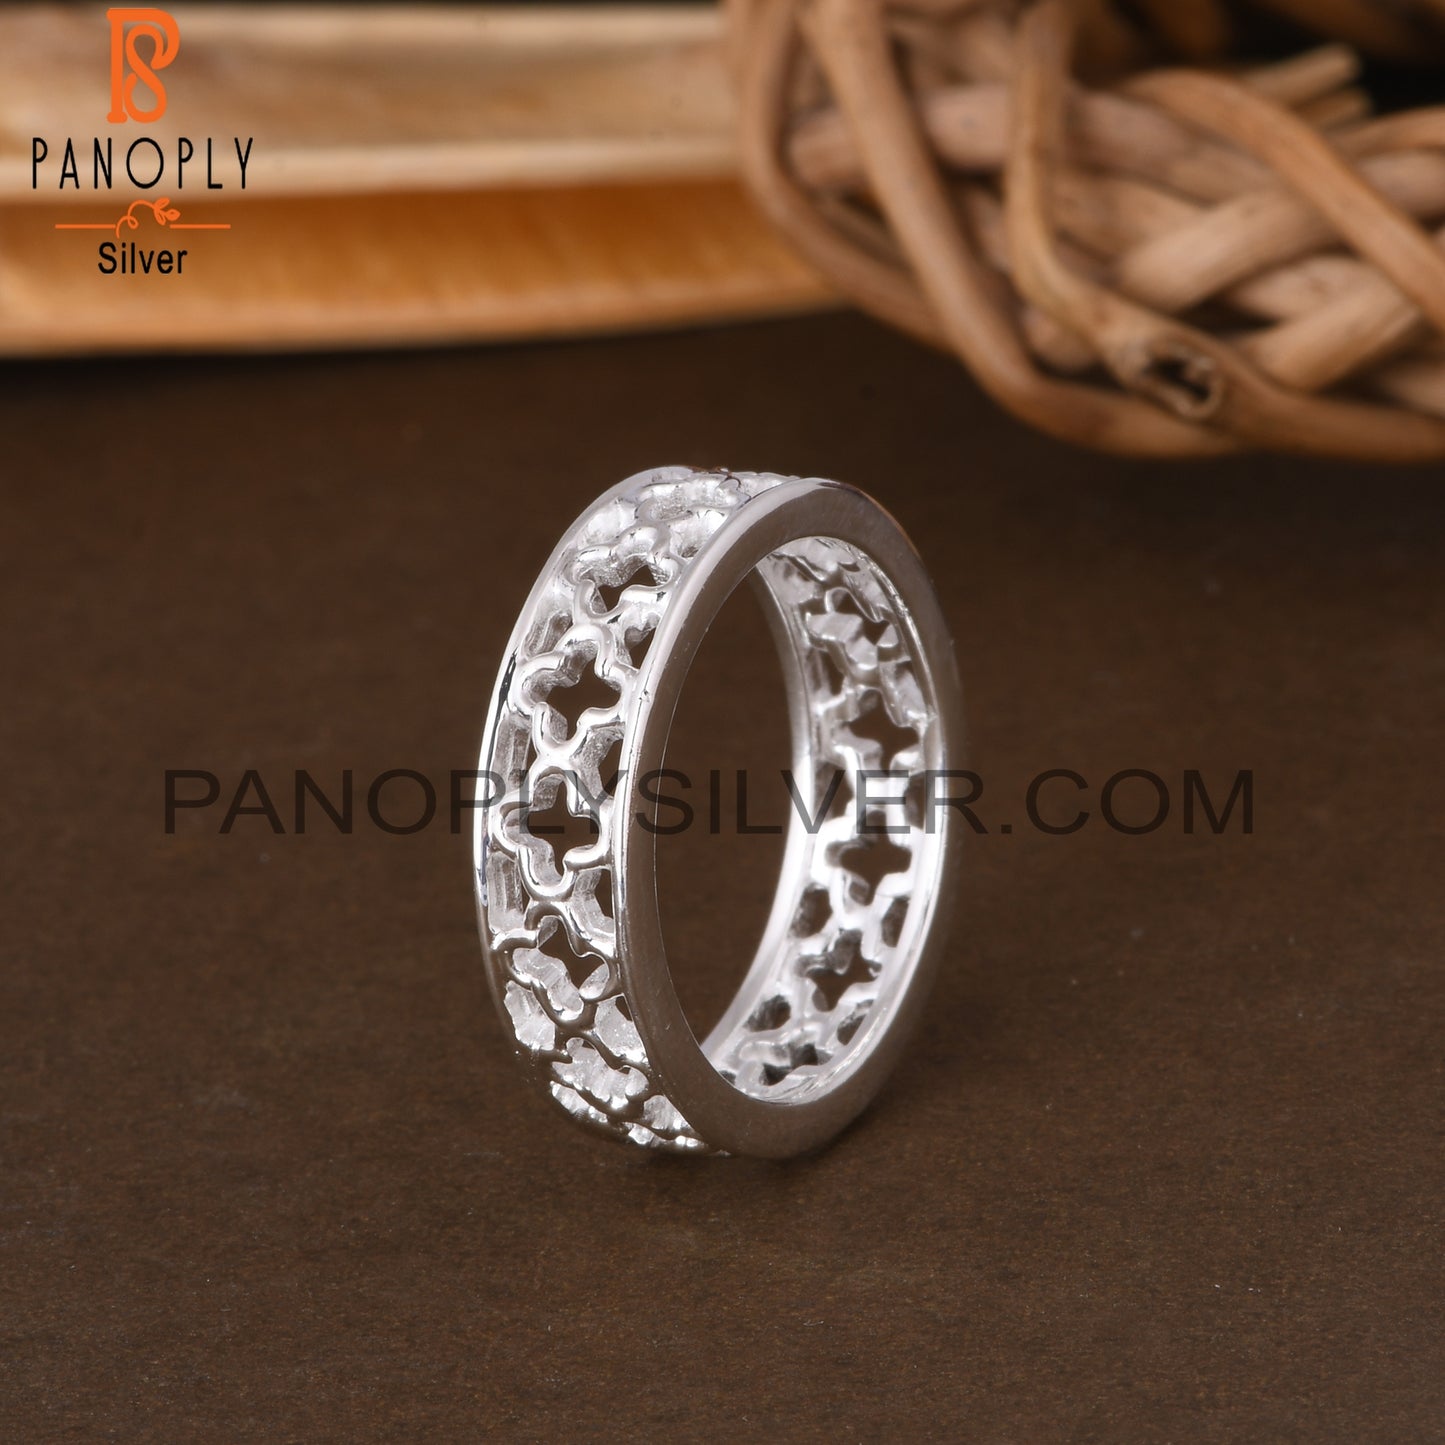 Handmade 925 Sterling Silver Pattern Ring